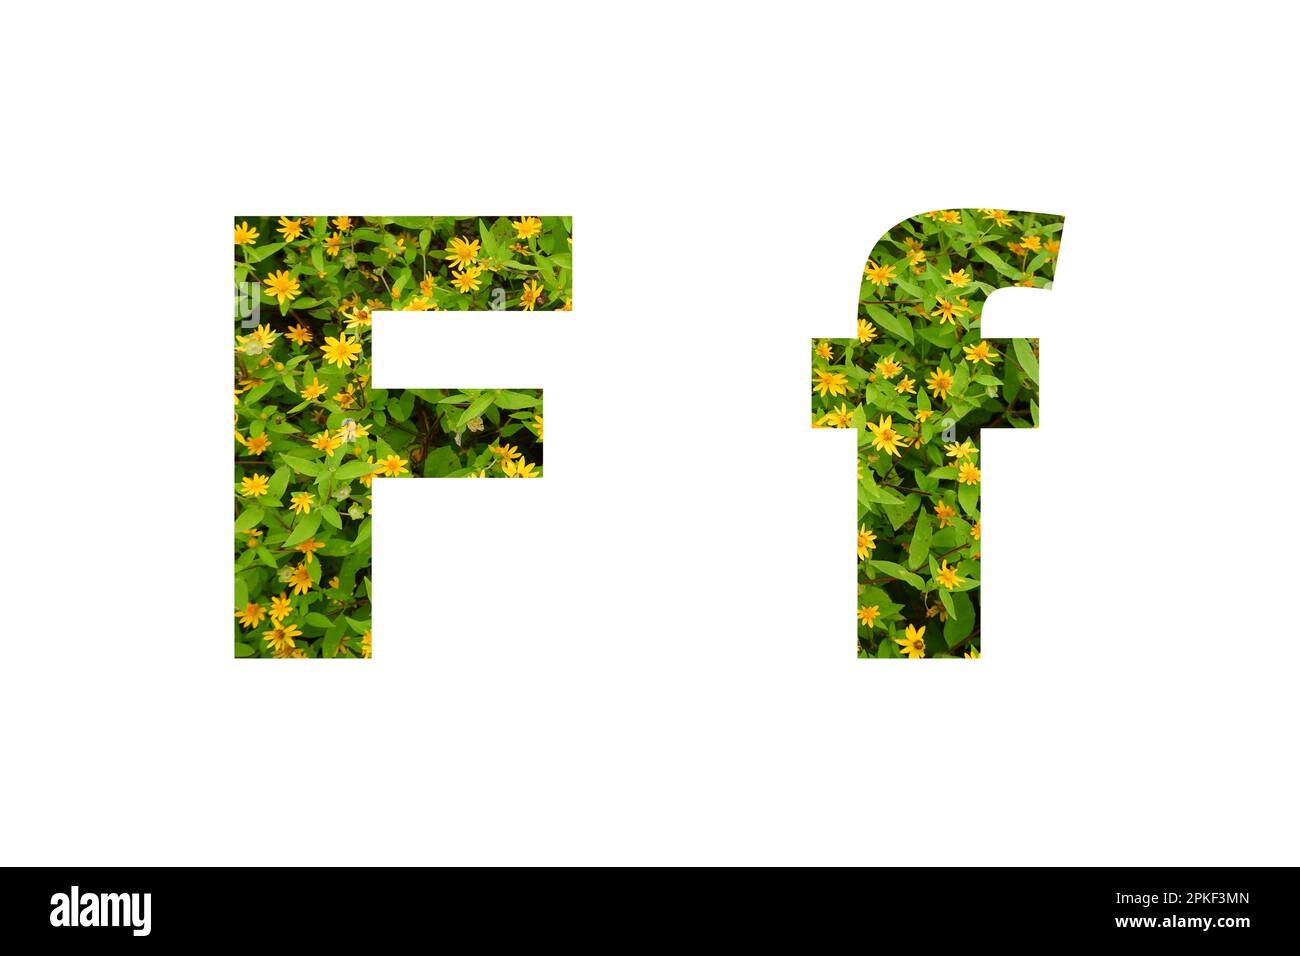 Police de fleurs Alphabet F isolé sur fond blanc fait de vraies fleurs jaunes vivantes Banque D'Images